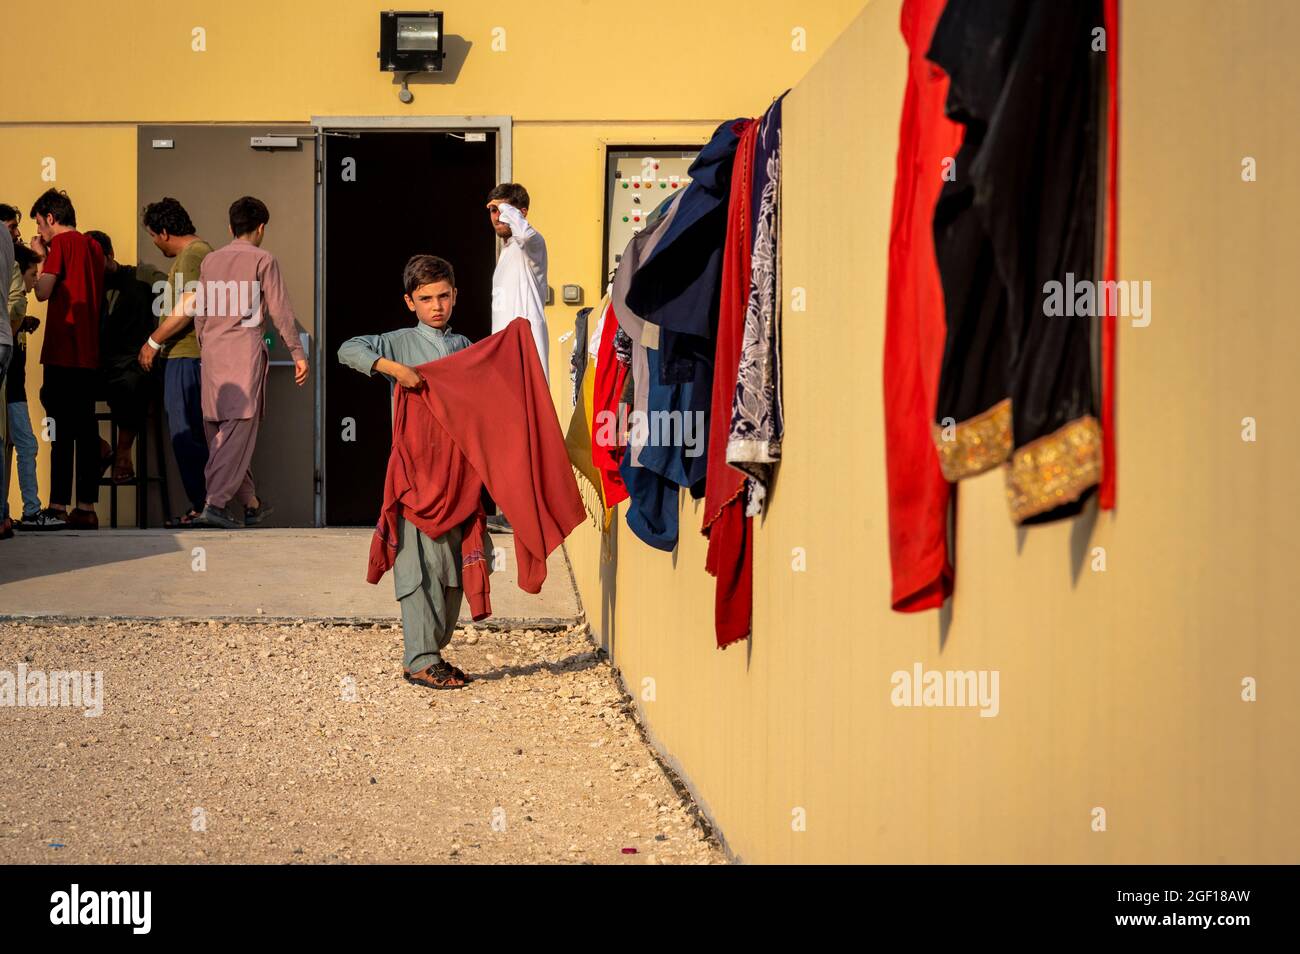 Al Udeied Air Base, Katar. August 2021. Ein afghanischer Junge legt in einer provisorischen Wohnanlage für Flüchtlinge, die am 21. August 2021 auf dem Luftwaffenstützpunkt Al Udied in Katar aus Kabul evakuiert wurden, Wäsche zum Trocknen auf. Quelle: Planetpix/Alamy Live News Stockfoto